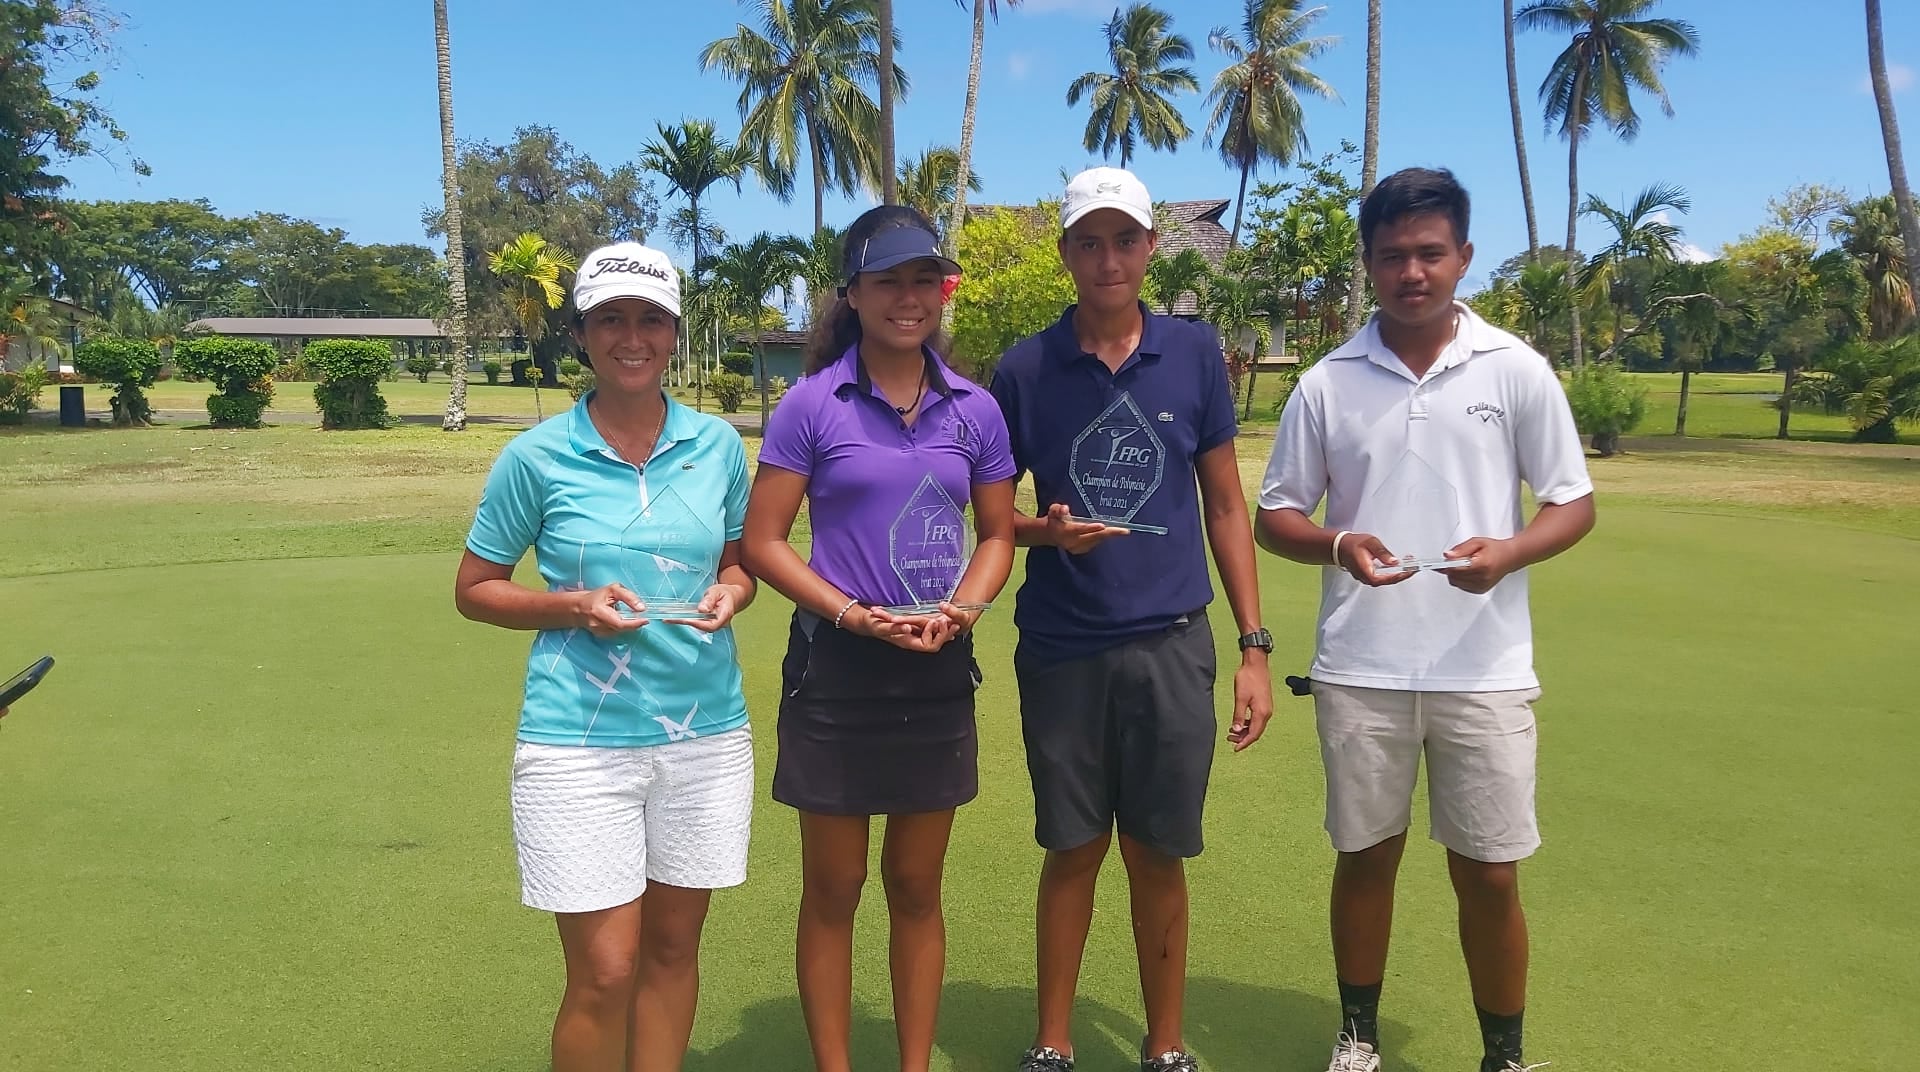 Rarau Taerea-Pani (centre gauche) et Ari de Maeyer (centre-droit), les champions de Polynésie de golf, aux côtés de leurs adversaires en finale, Laina Faraire et Tuaraina Tamata.